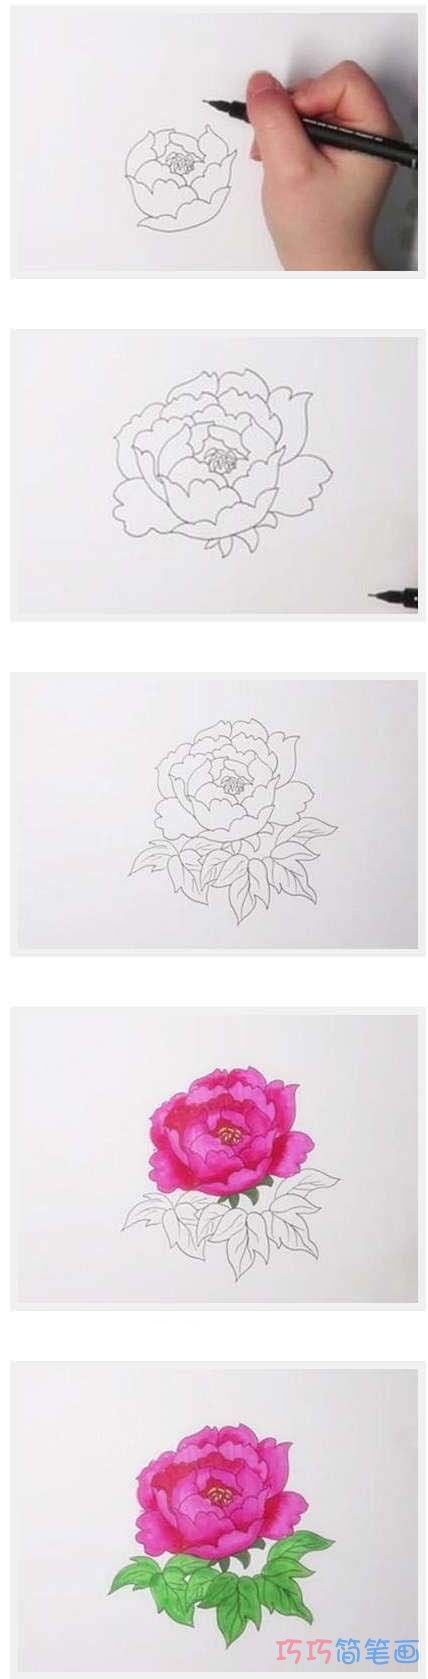 牡丹花的画法步骤图带颜色 牡丹花简笔画图片